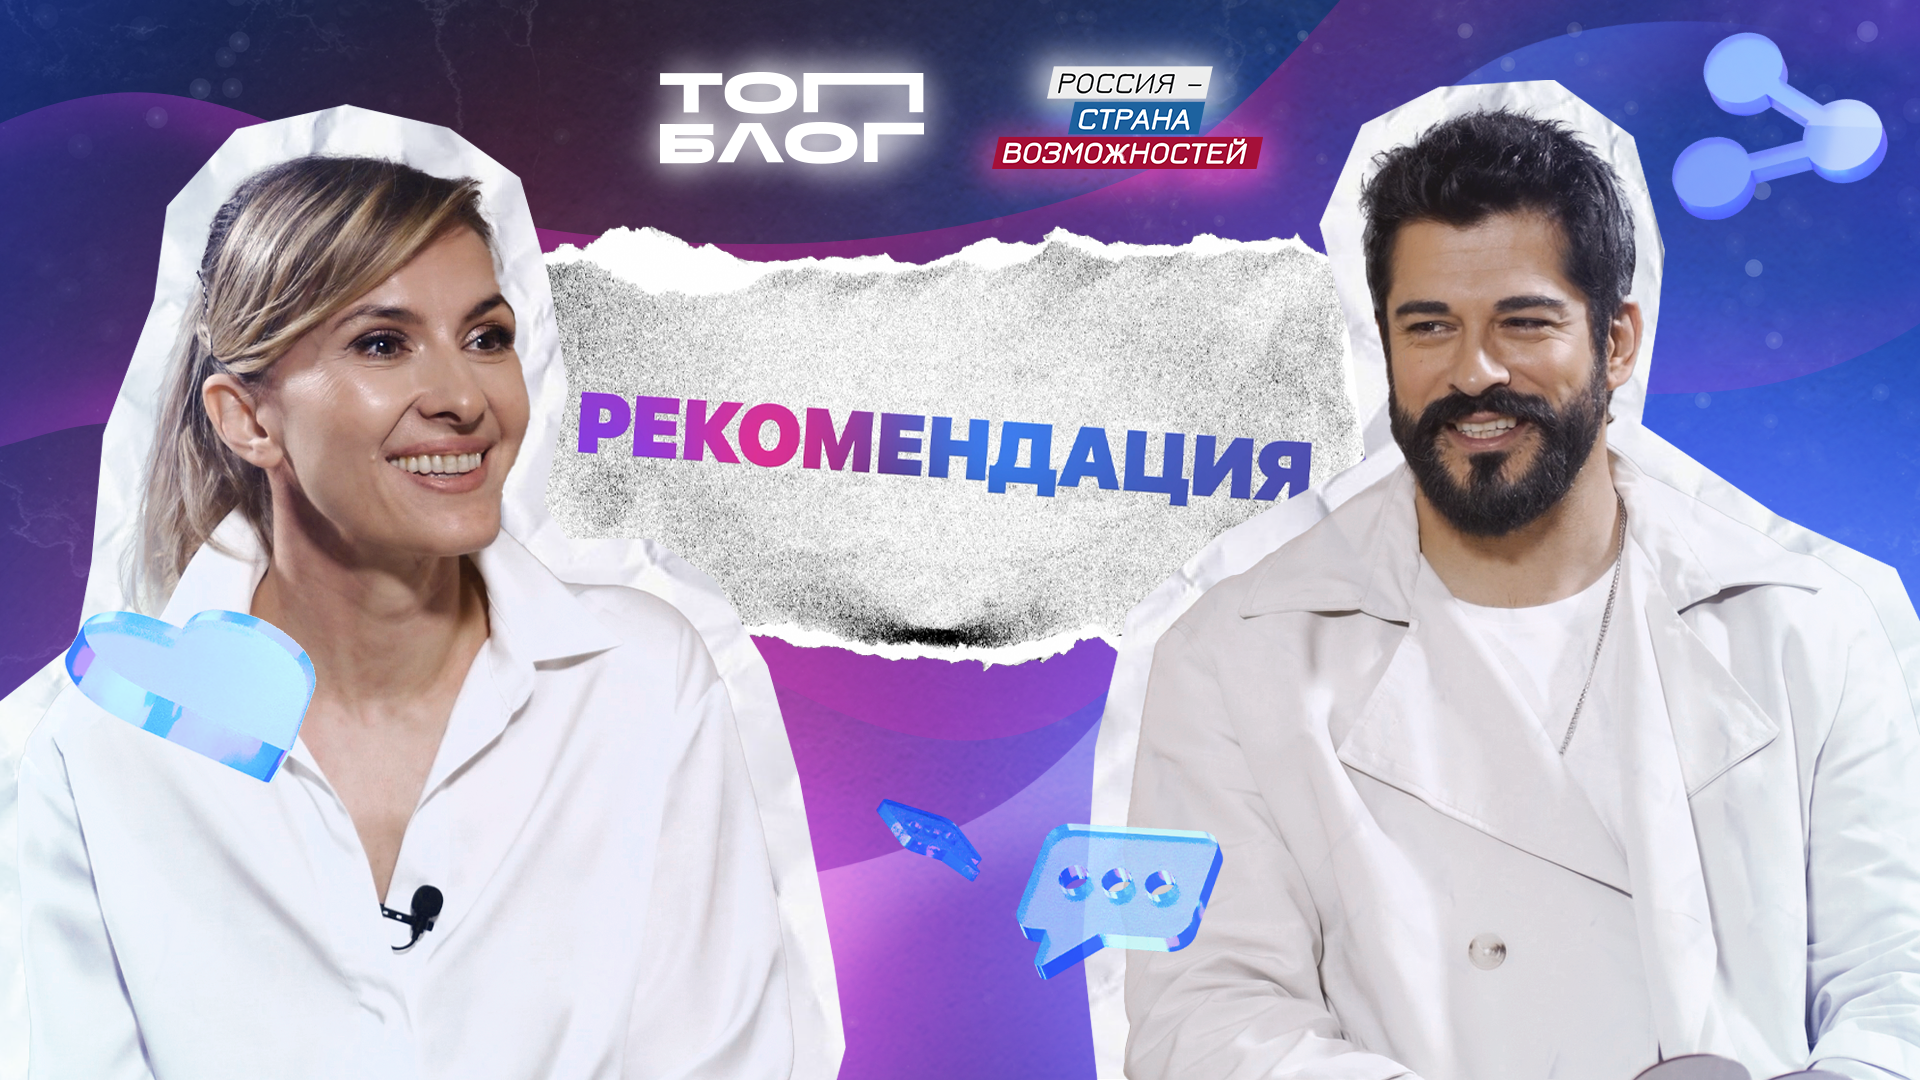 Звезда турецких сериалов Бурак Озчивит дал эксклюзивное интервью для проекта «ТопБЛОГ»